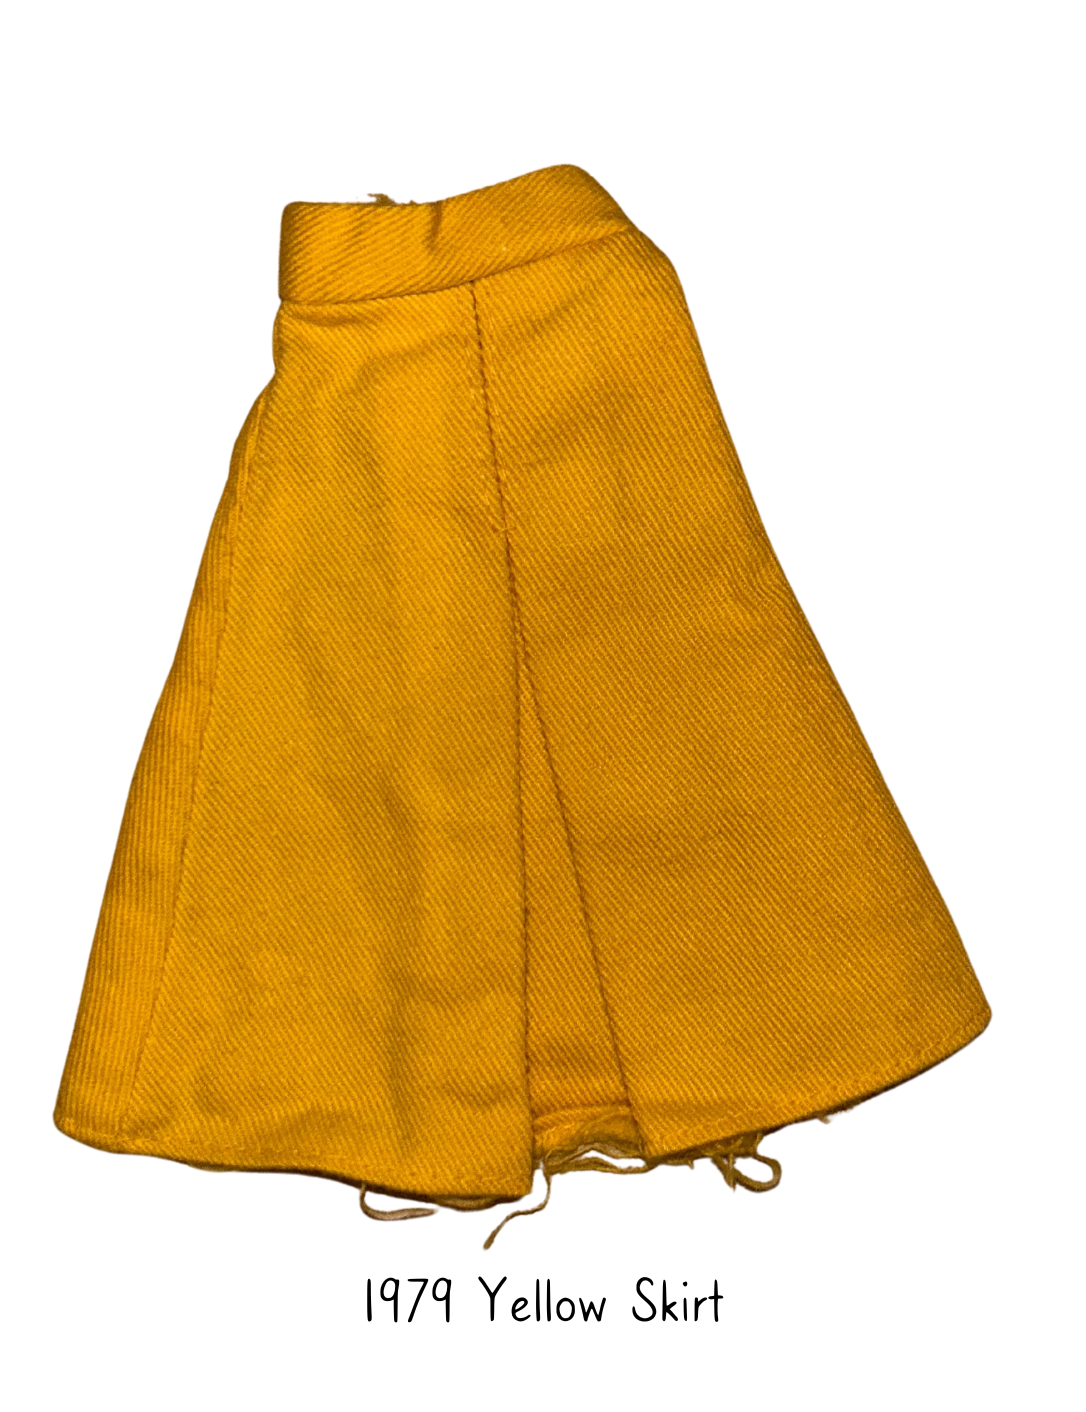 Pedigree Sindy 1979 Mix n Match Yellow Skirt